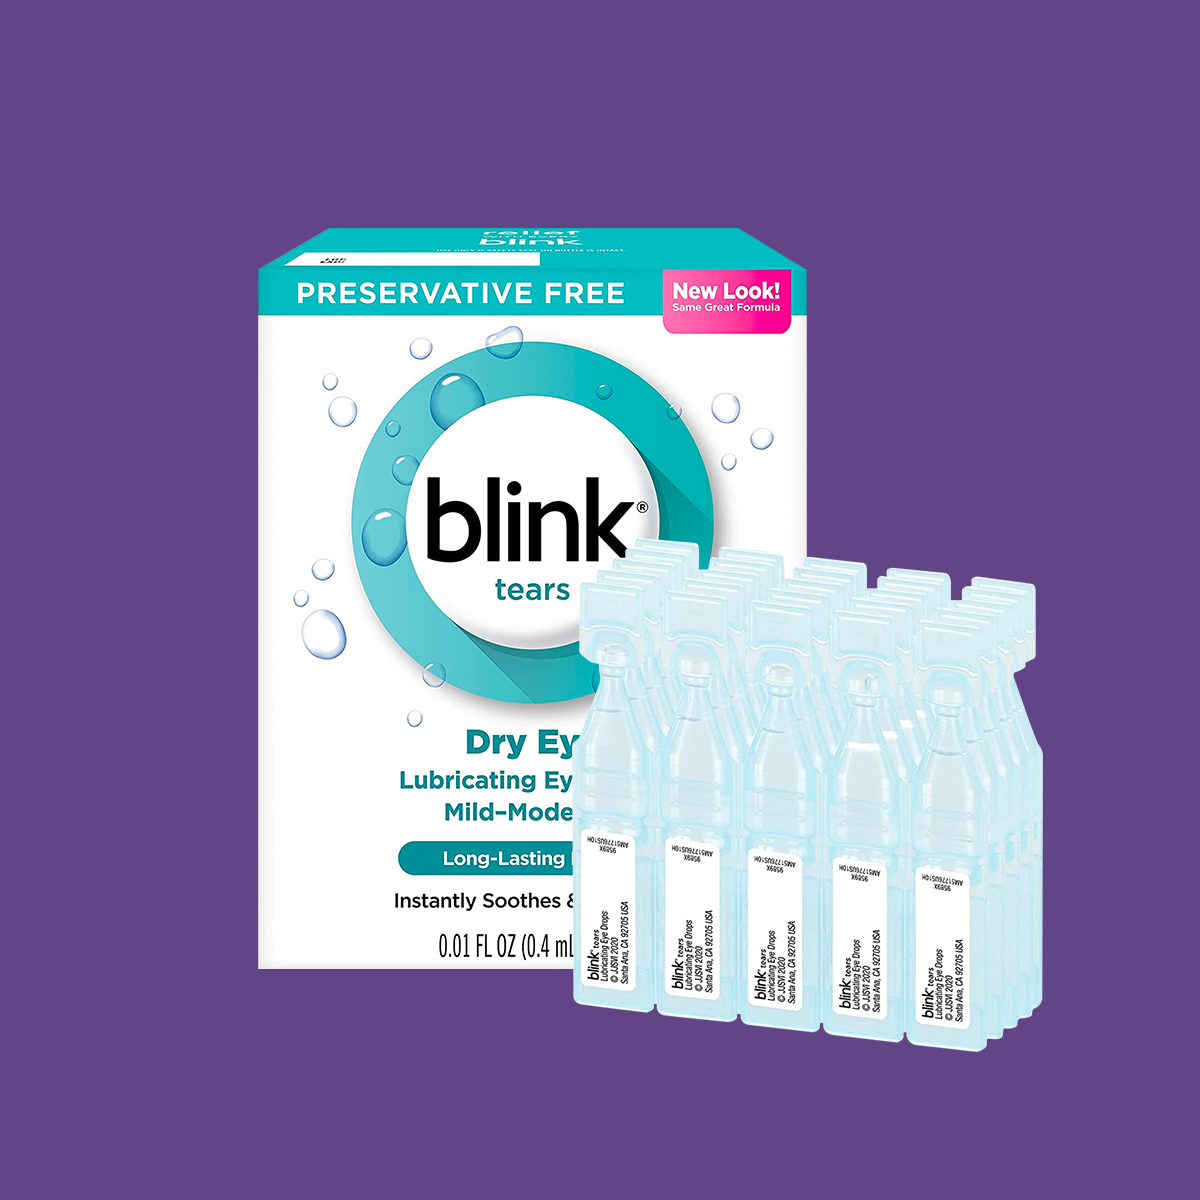 Blink Tears Preservative Free Lubricating Eye Drops Vials (25 Count)